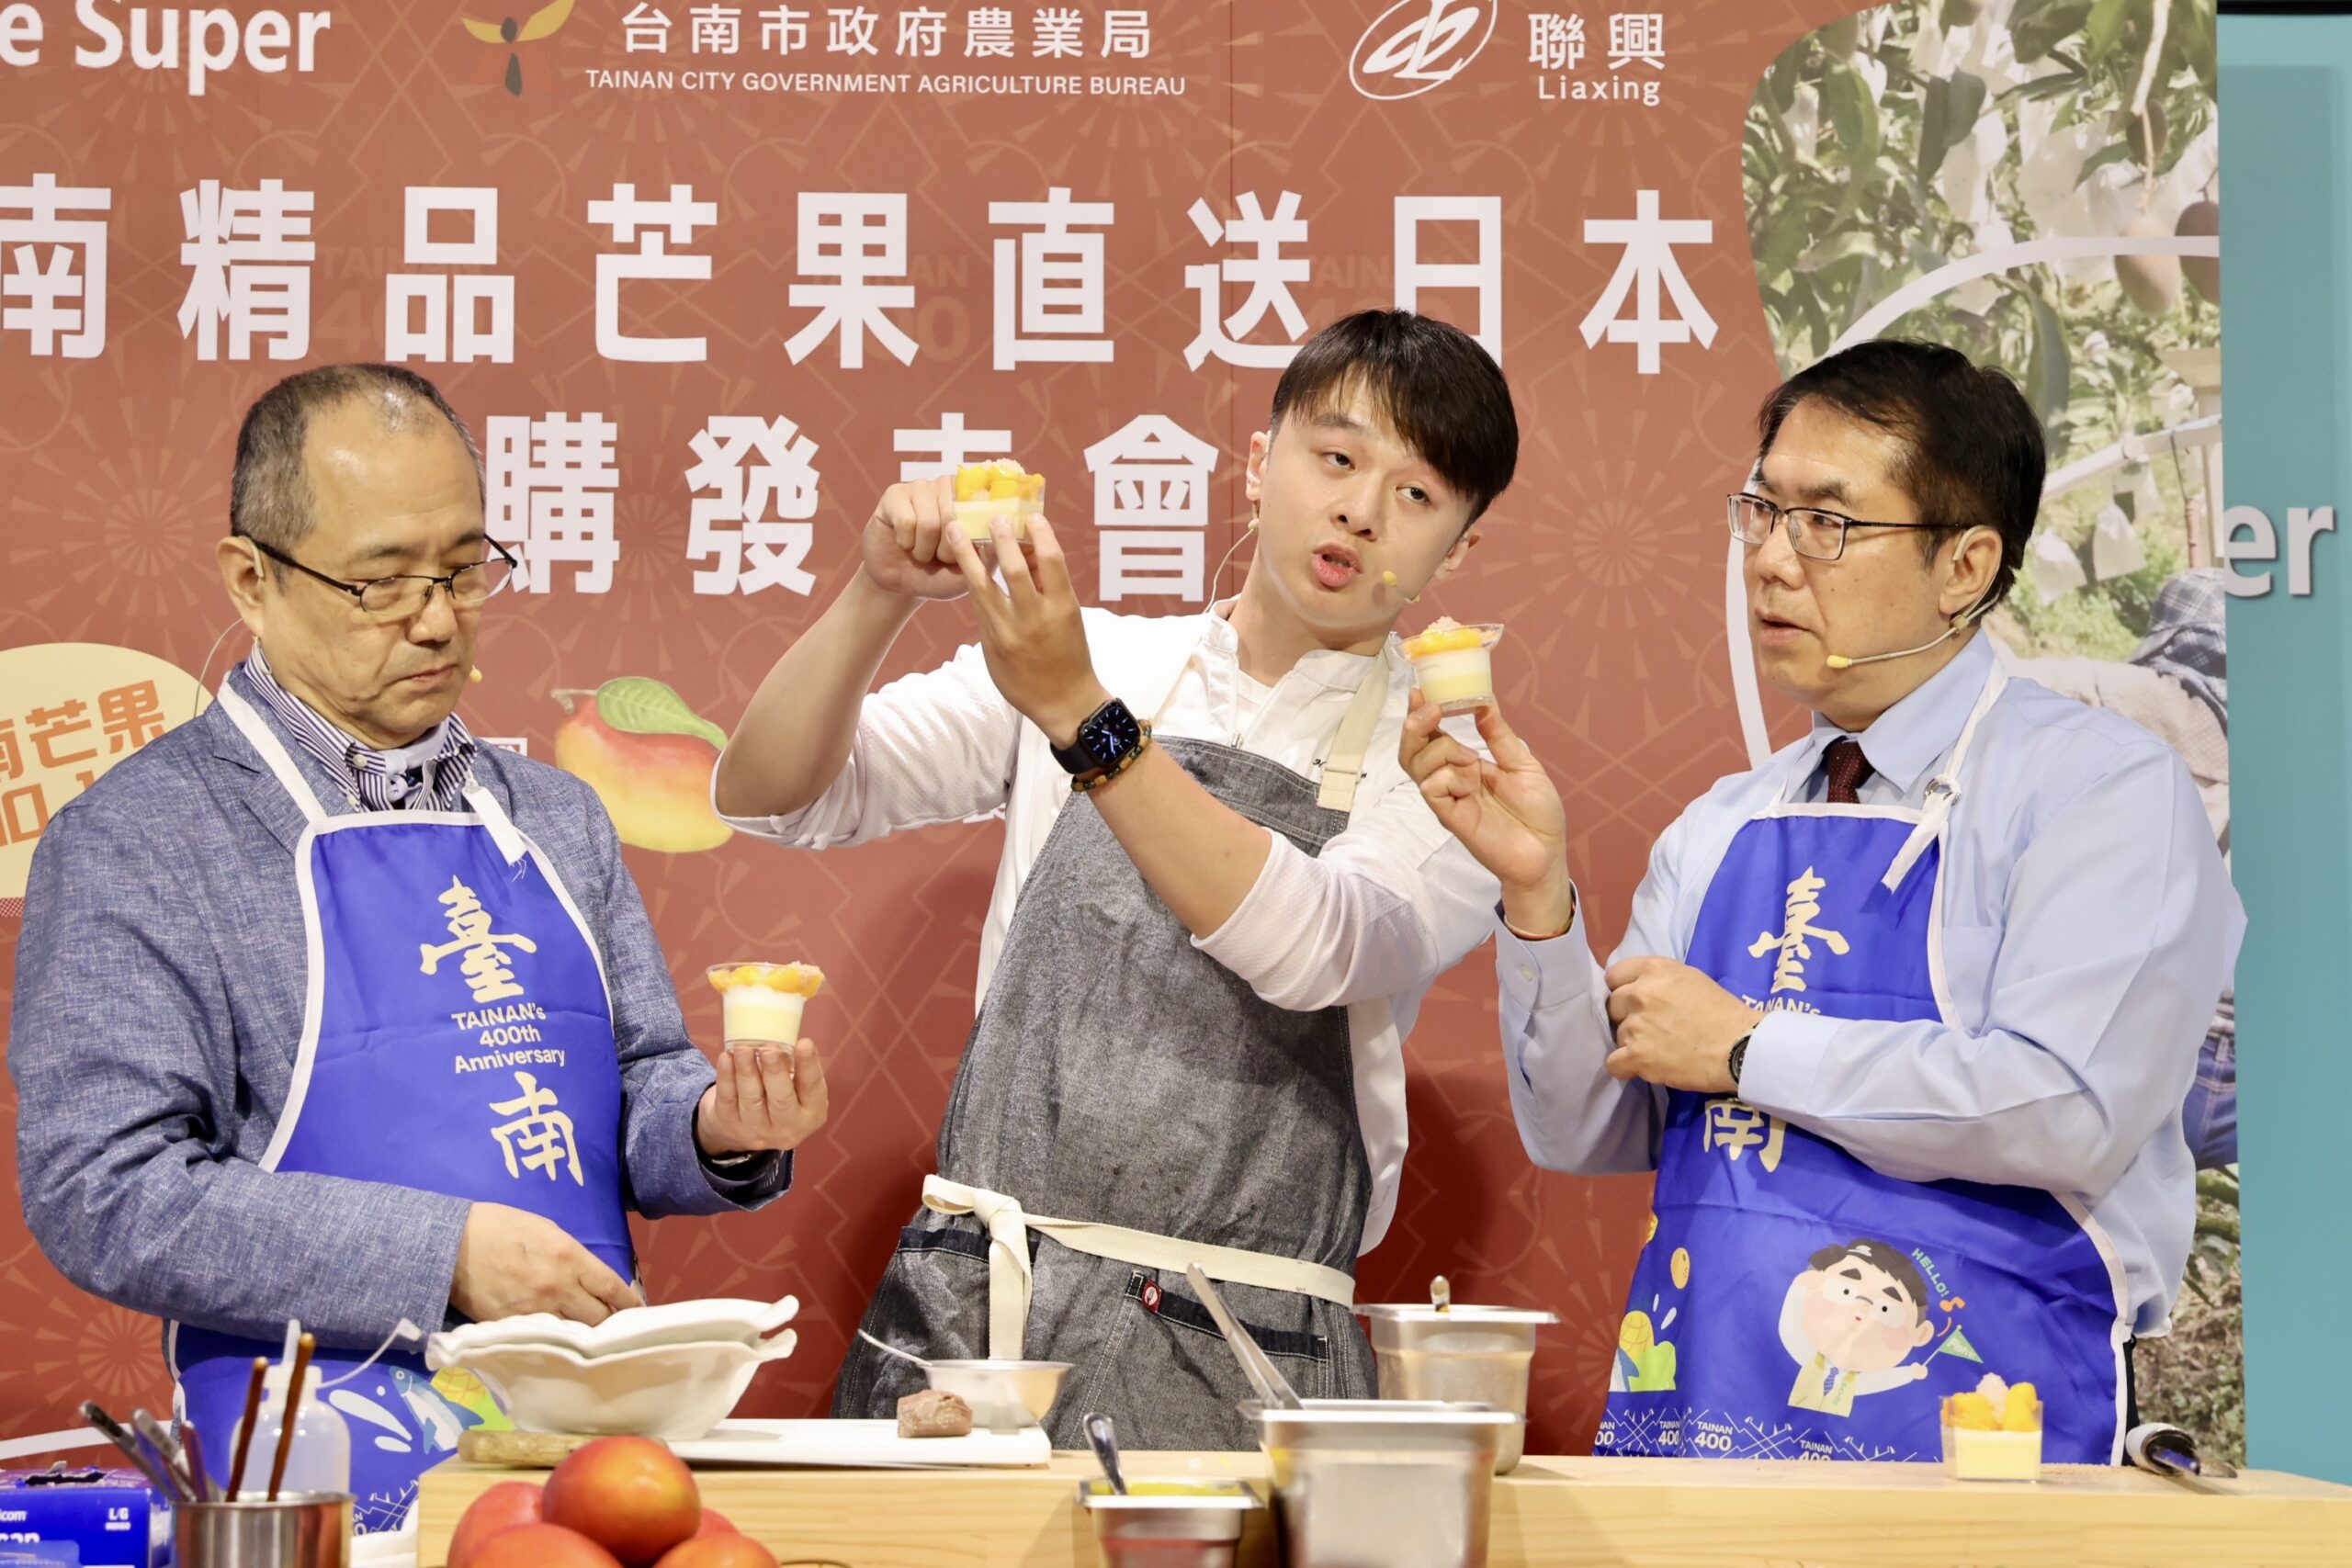 現場由多項廚藝獎得主游星淵主廚，帶著台南市長黃偉哲和微風超市總經理西川正史親自示範芒果簡單DIY輕食料理